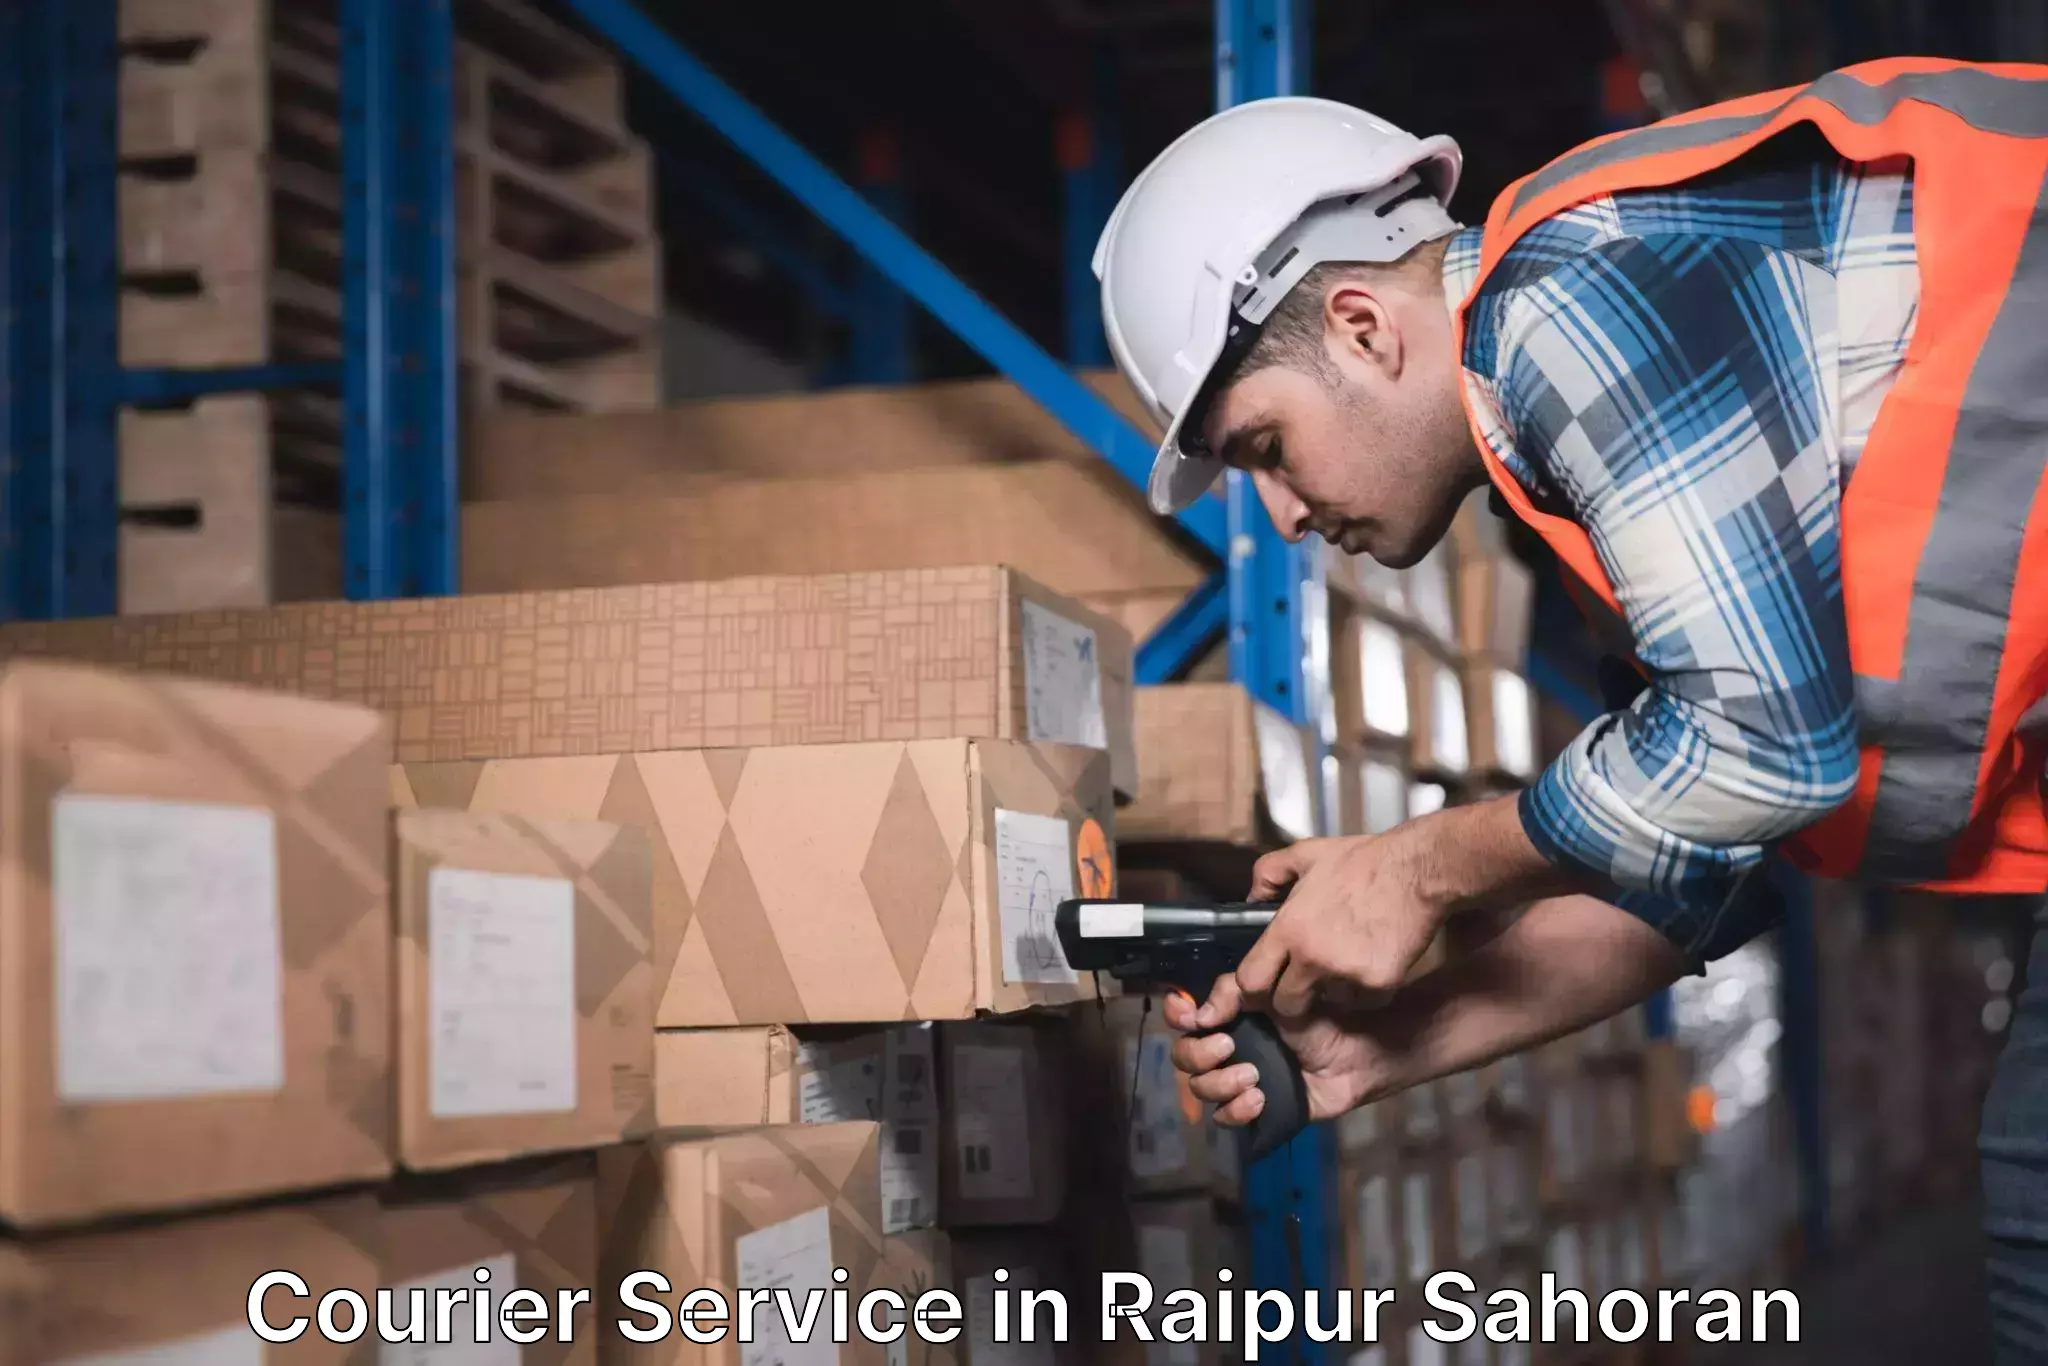 Modern delivery methods in Raipur Sahoran